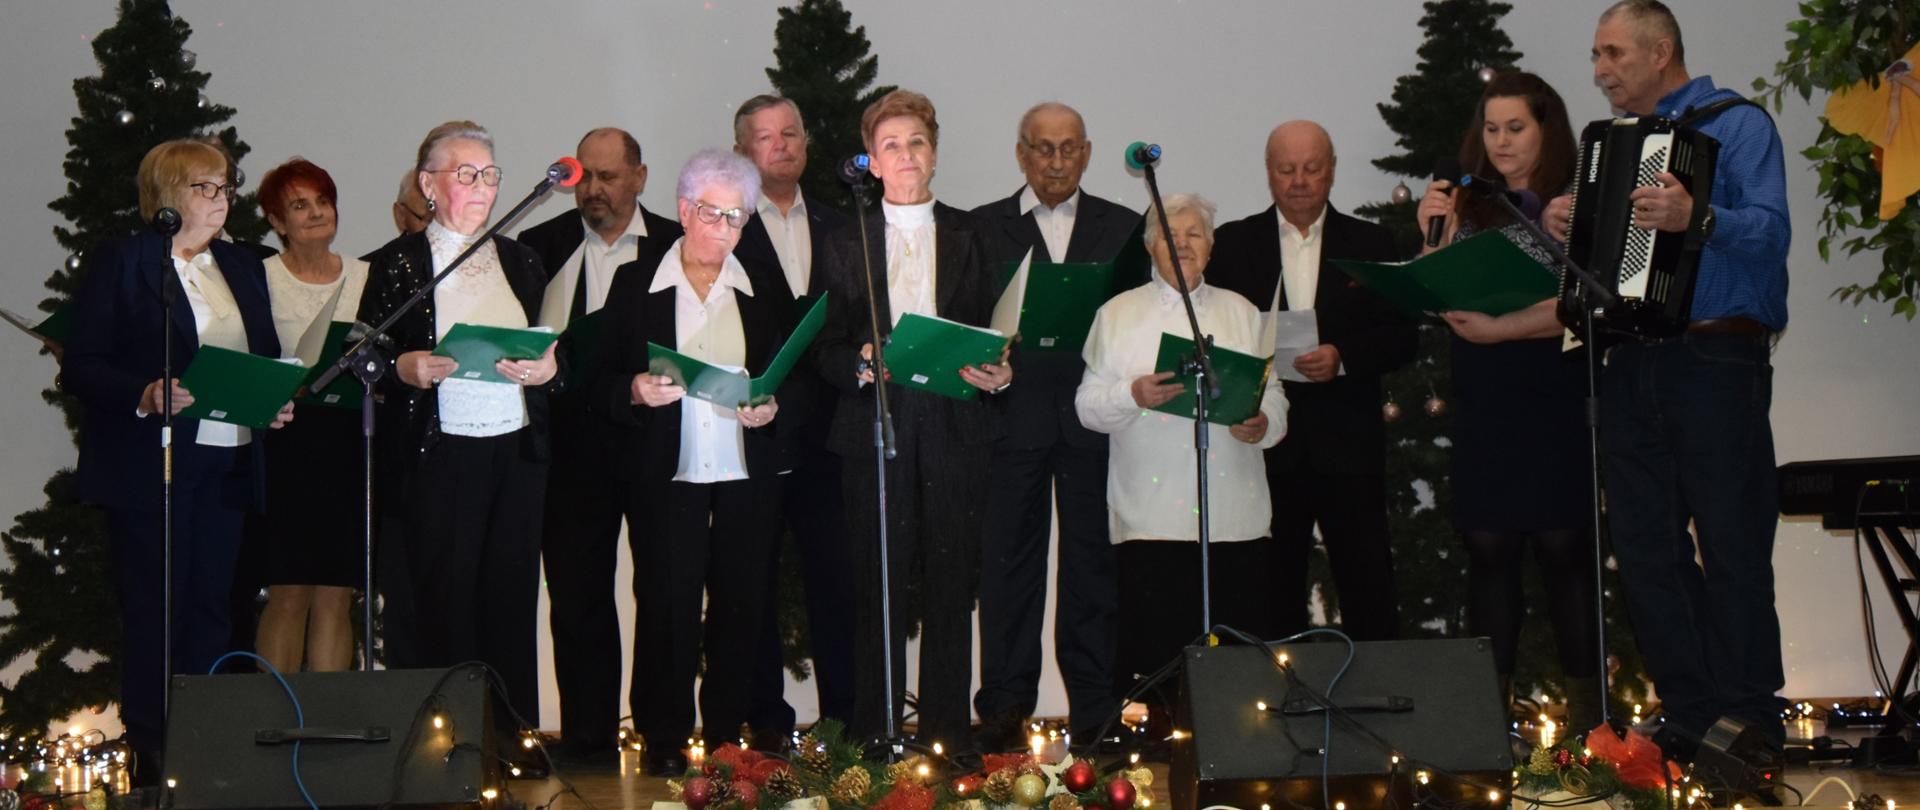 Zdjęcie przedstawia grupę seniorów (kobiet i mężczyzn) śpiewających na scenie.